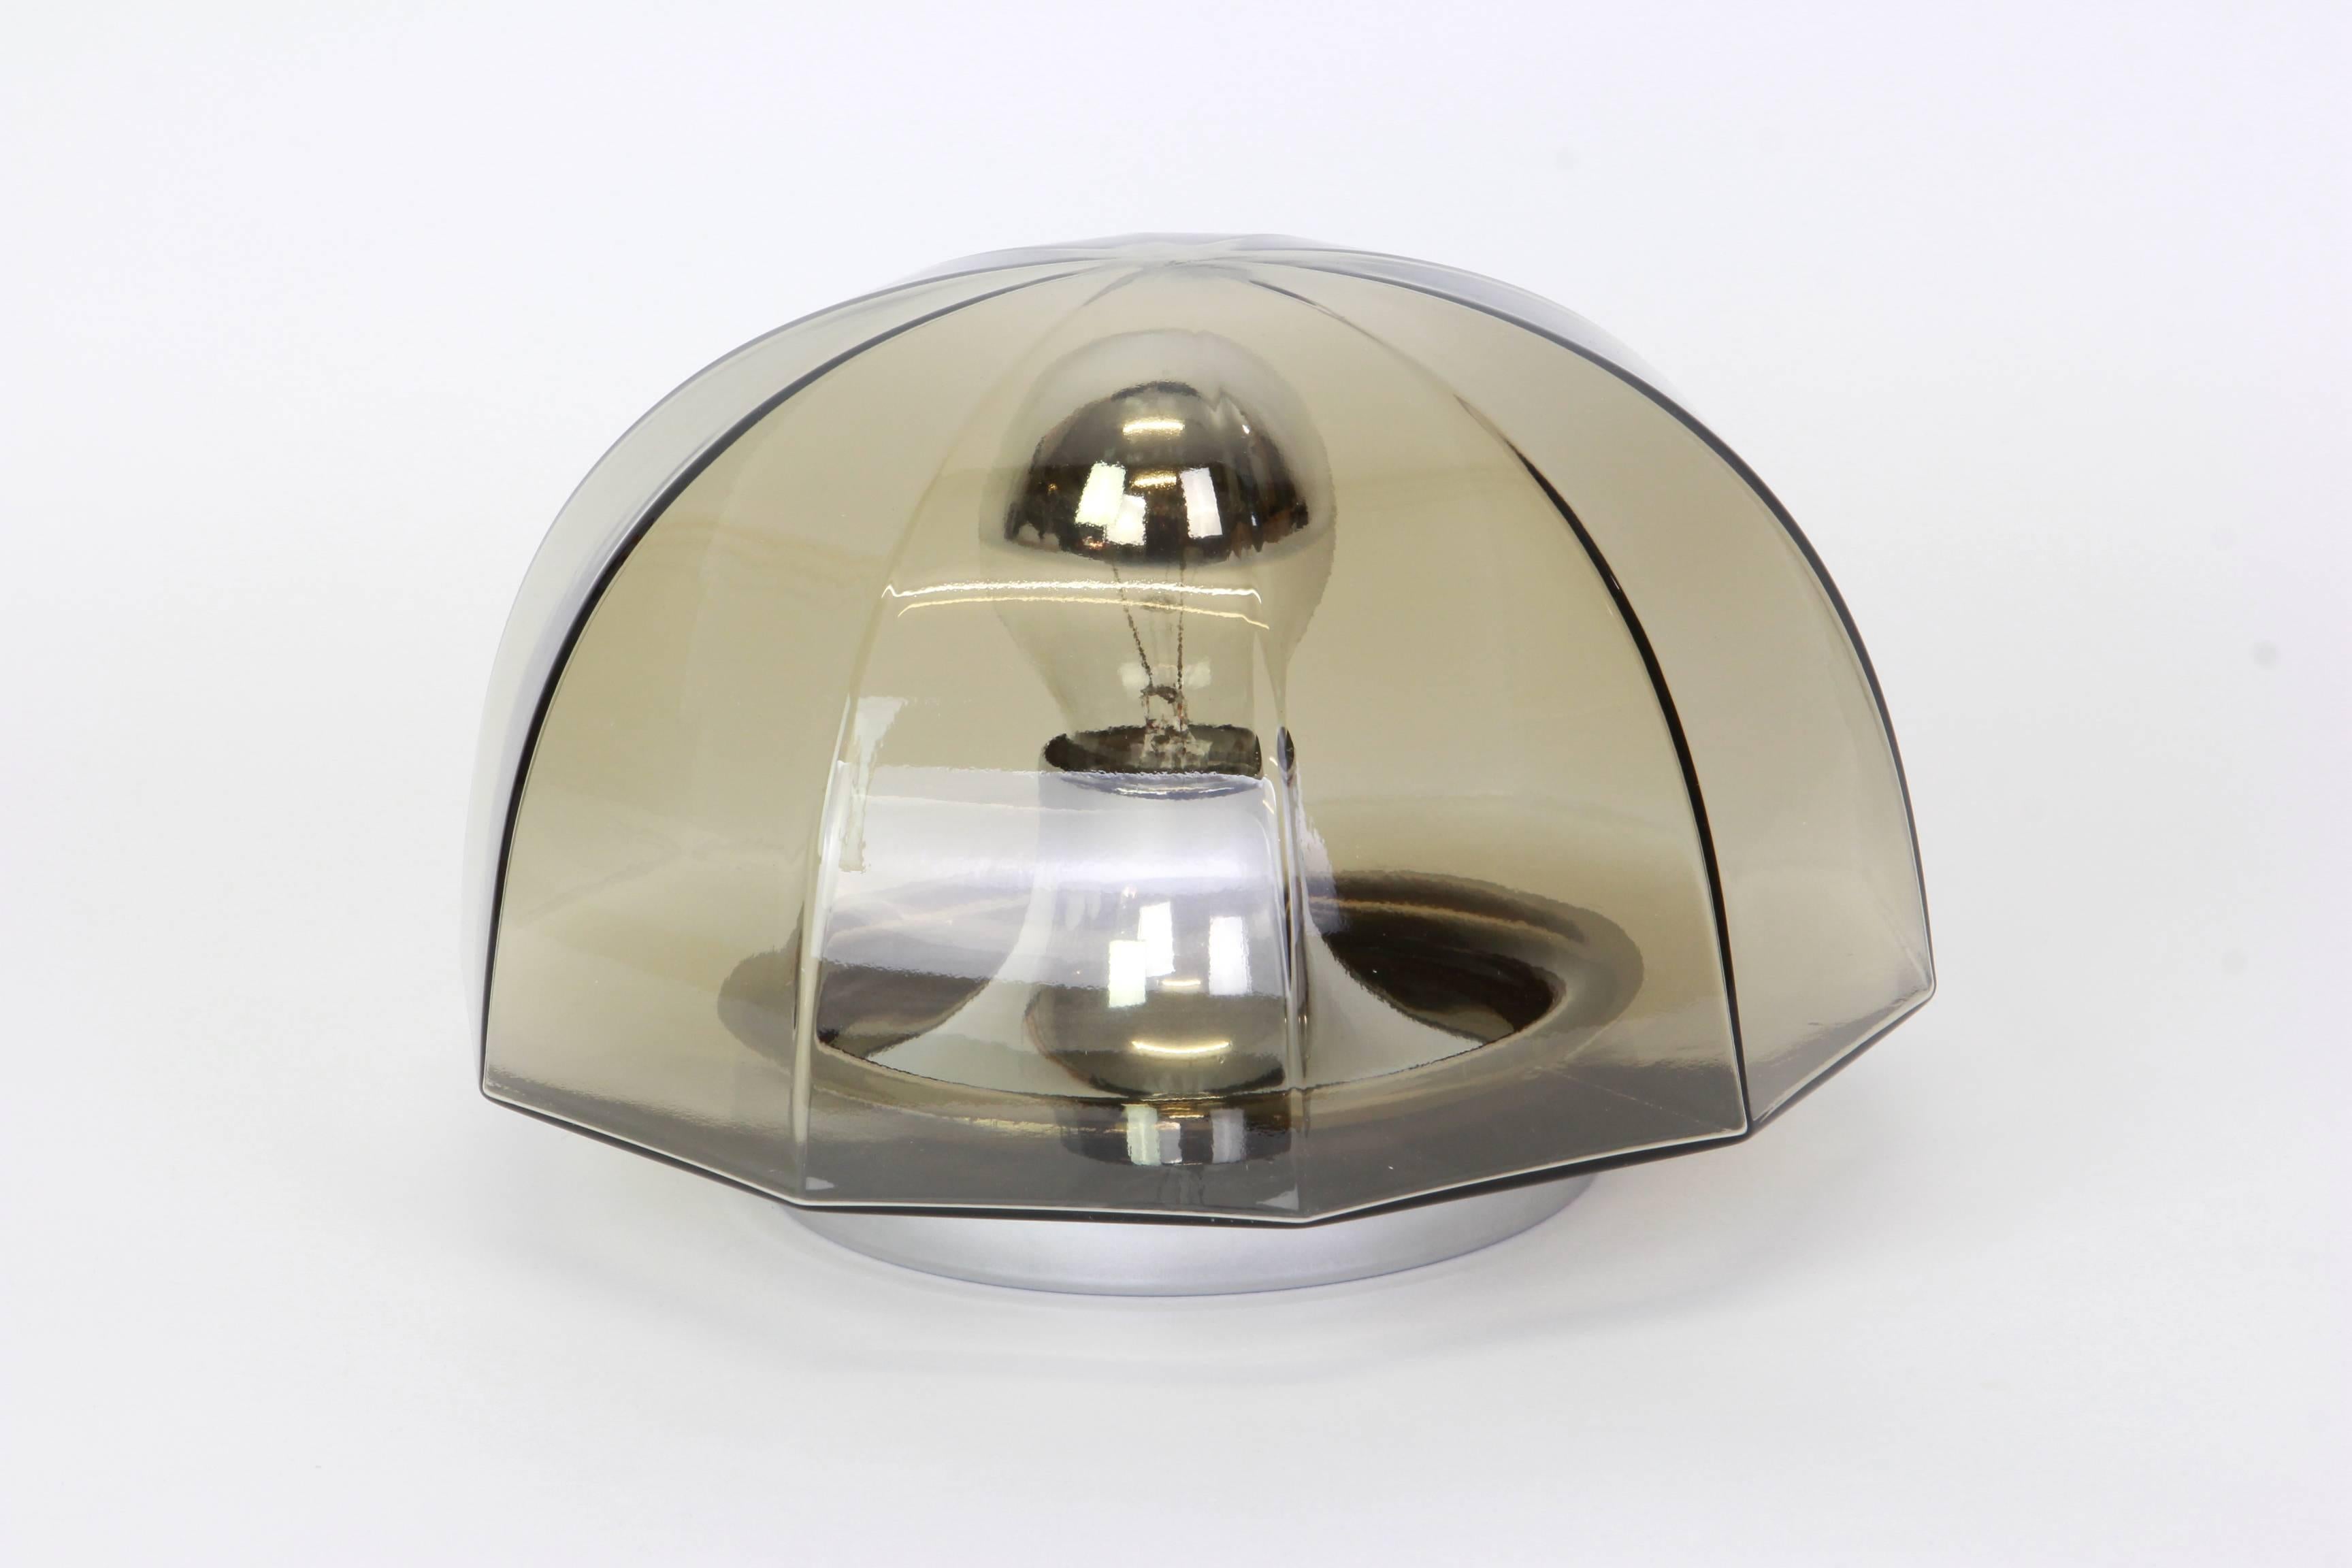 Paar Räucherglas-Leuchten oder flush mount von Hillebrand Deutschland, ca. 1960-1969. Tolle Form und facettenreiches Rauchglas.

Hochwertig und in sehr gutem Zustand. Gereinigt, gut verkabelt und einsatzbereit. 

Jede Leuchte benötigt 1